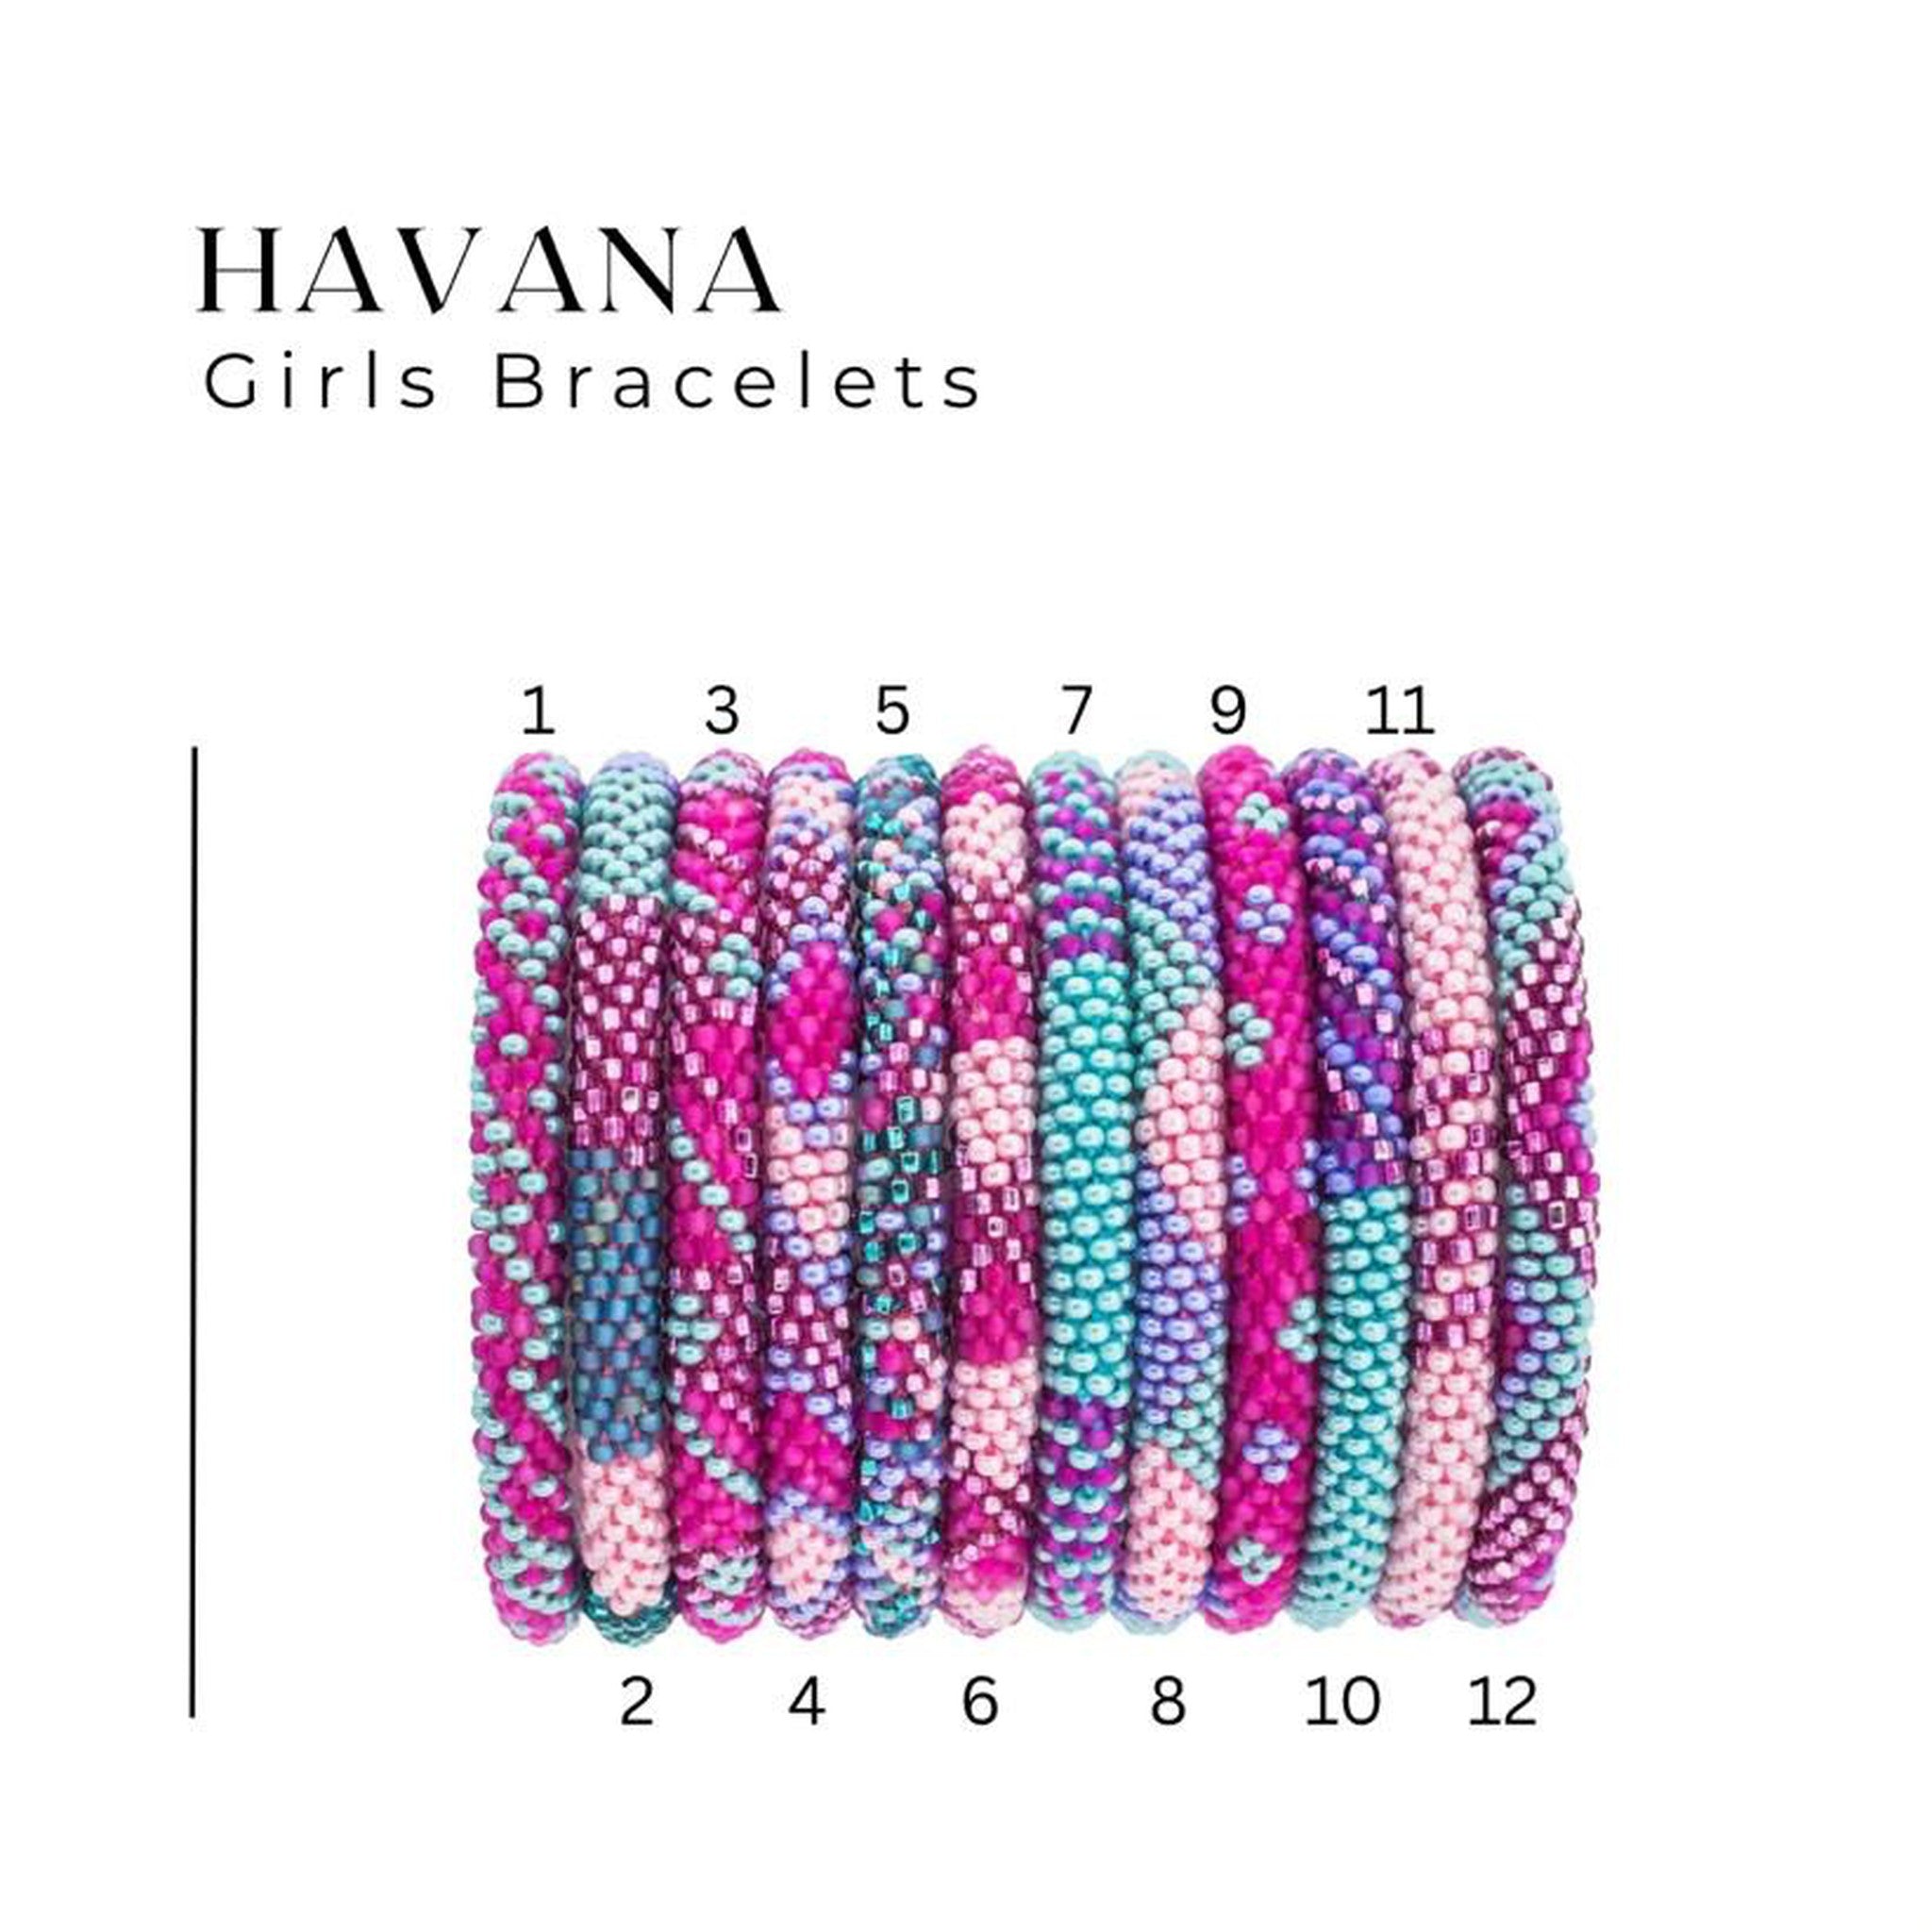 Girl Bracelets - Havana